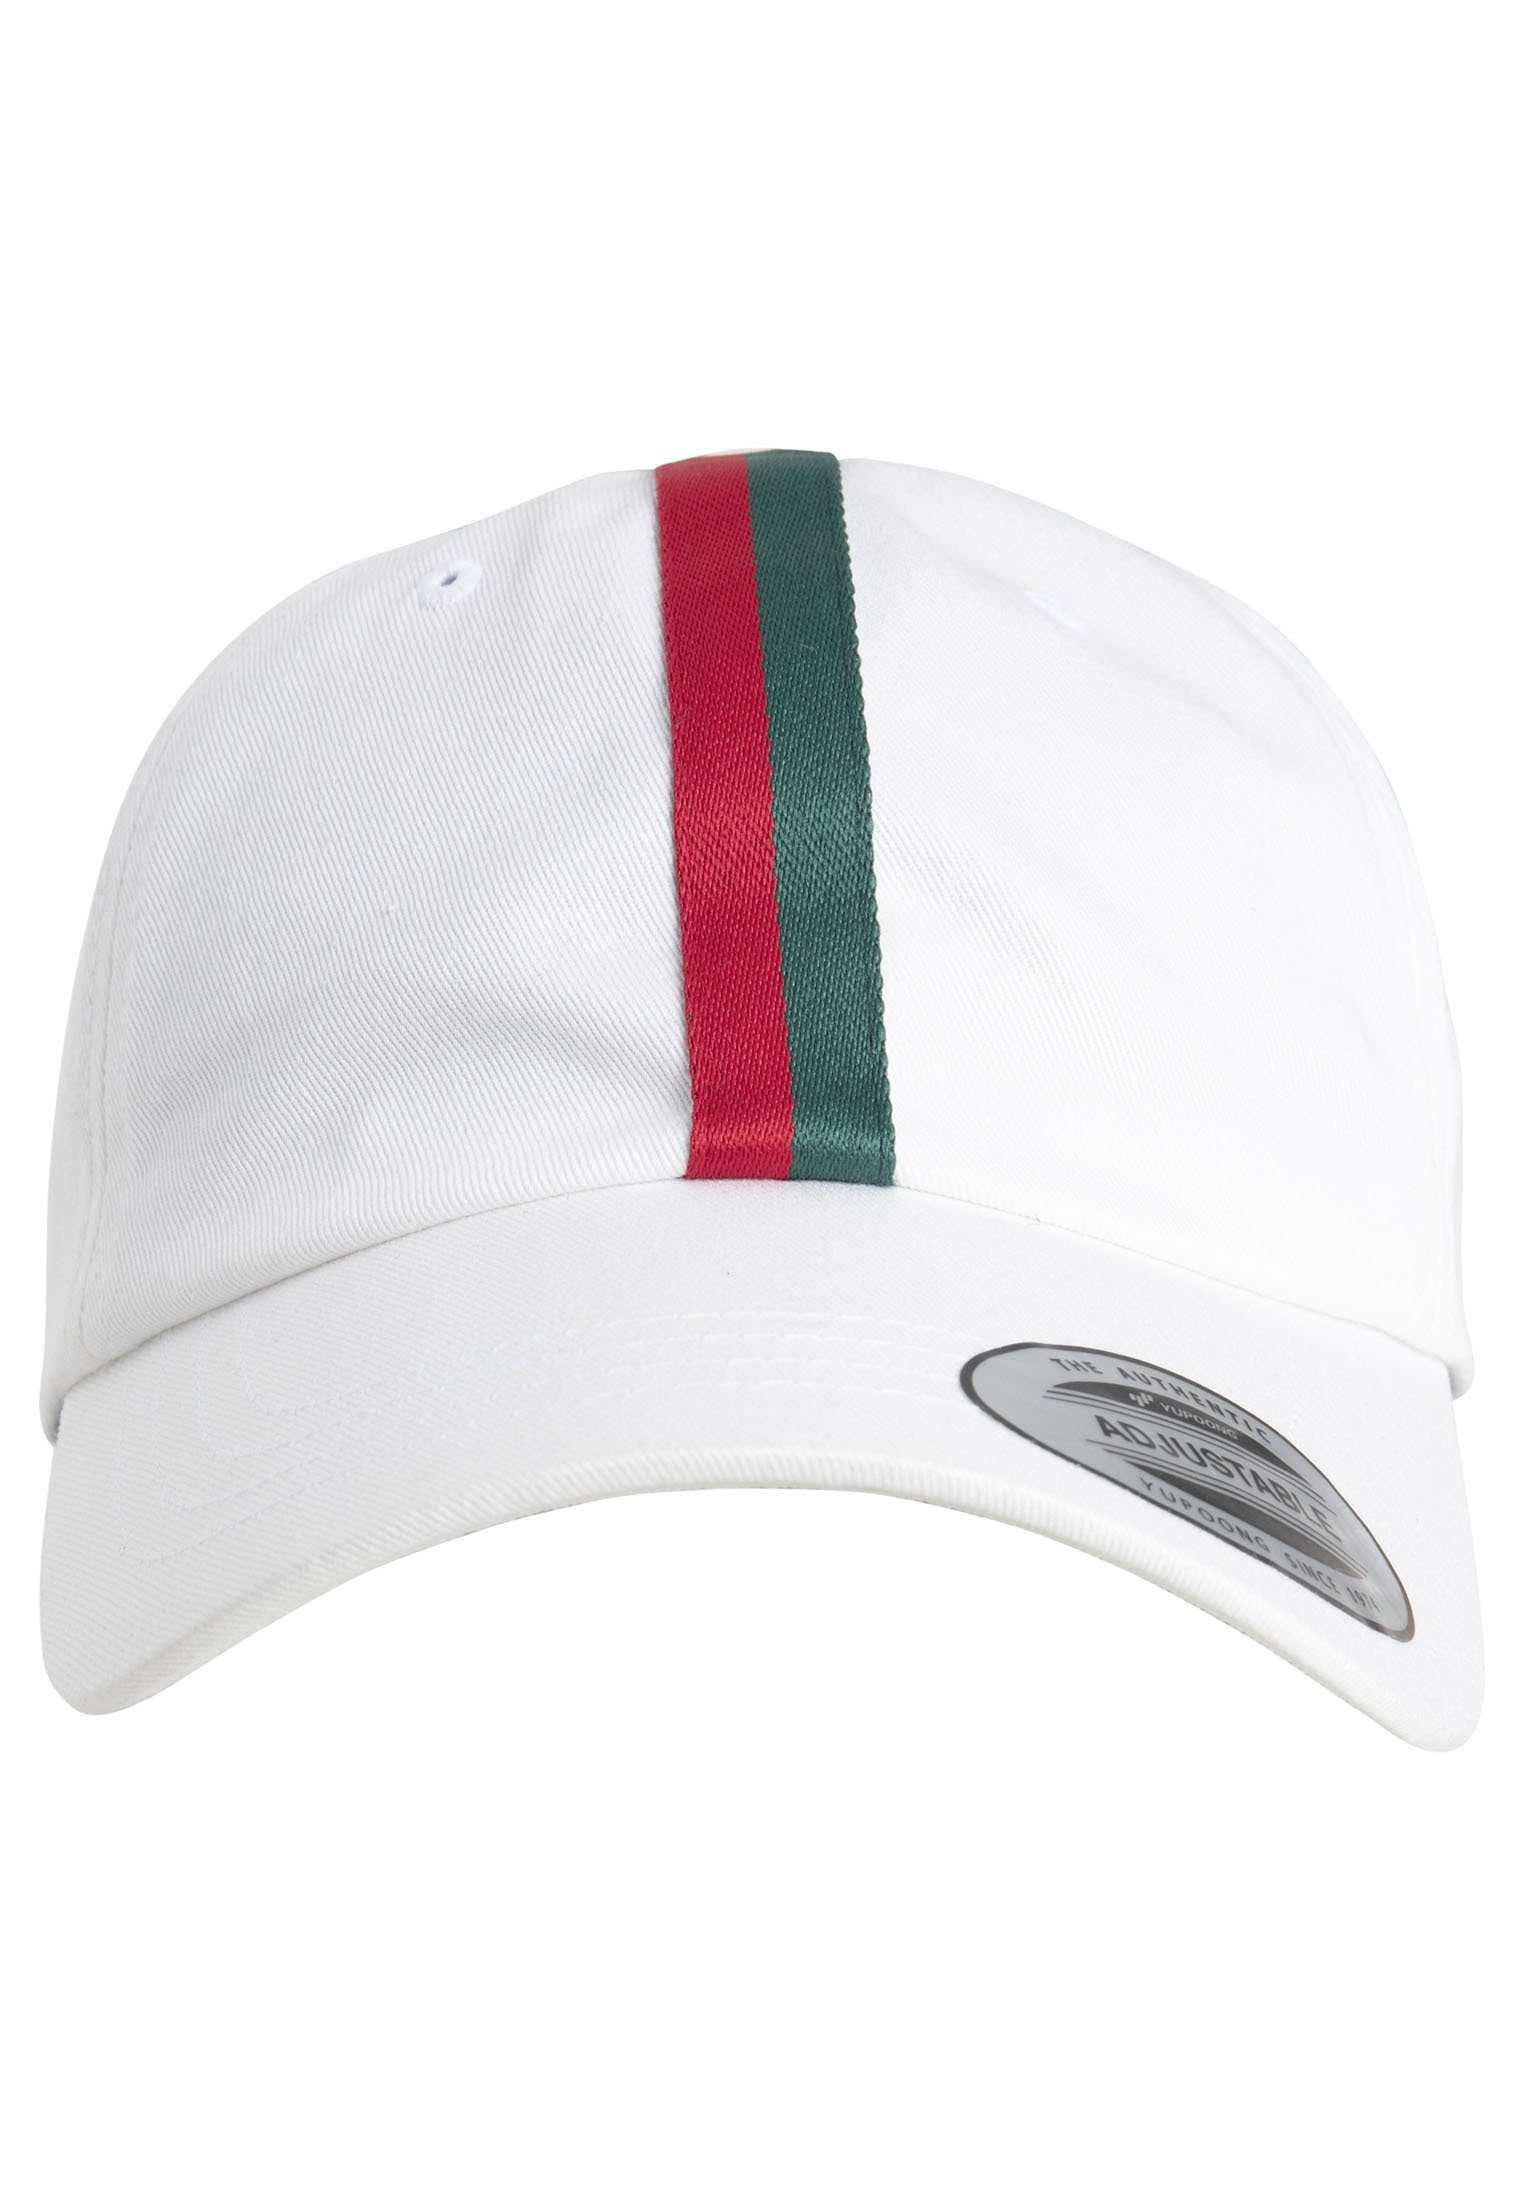 Accessoires Dad Flex Stripe Dad Hat Stripe white/firered/green Cap 6245DS Flexfit